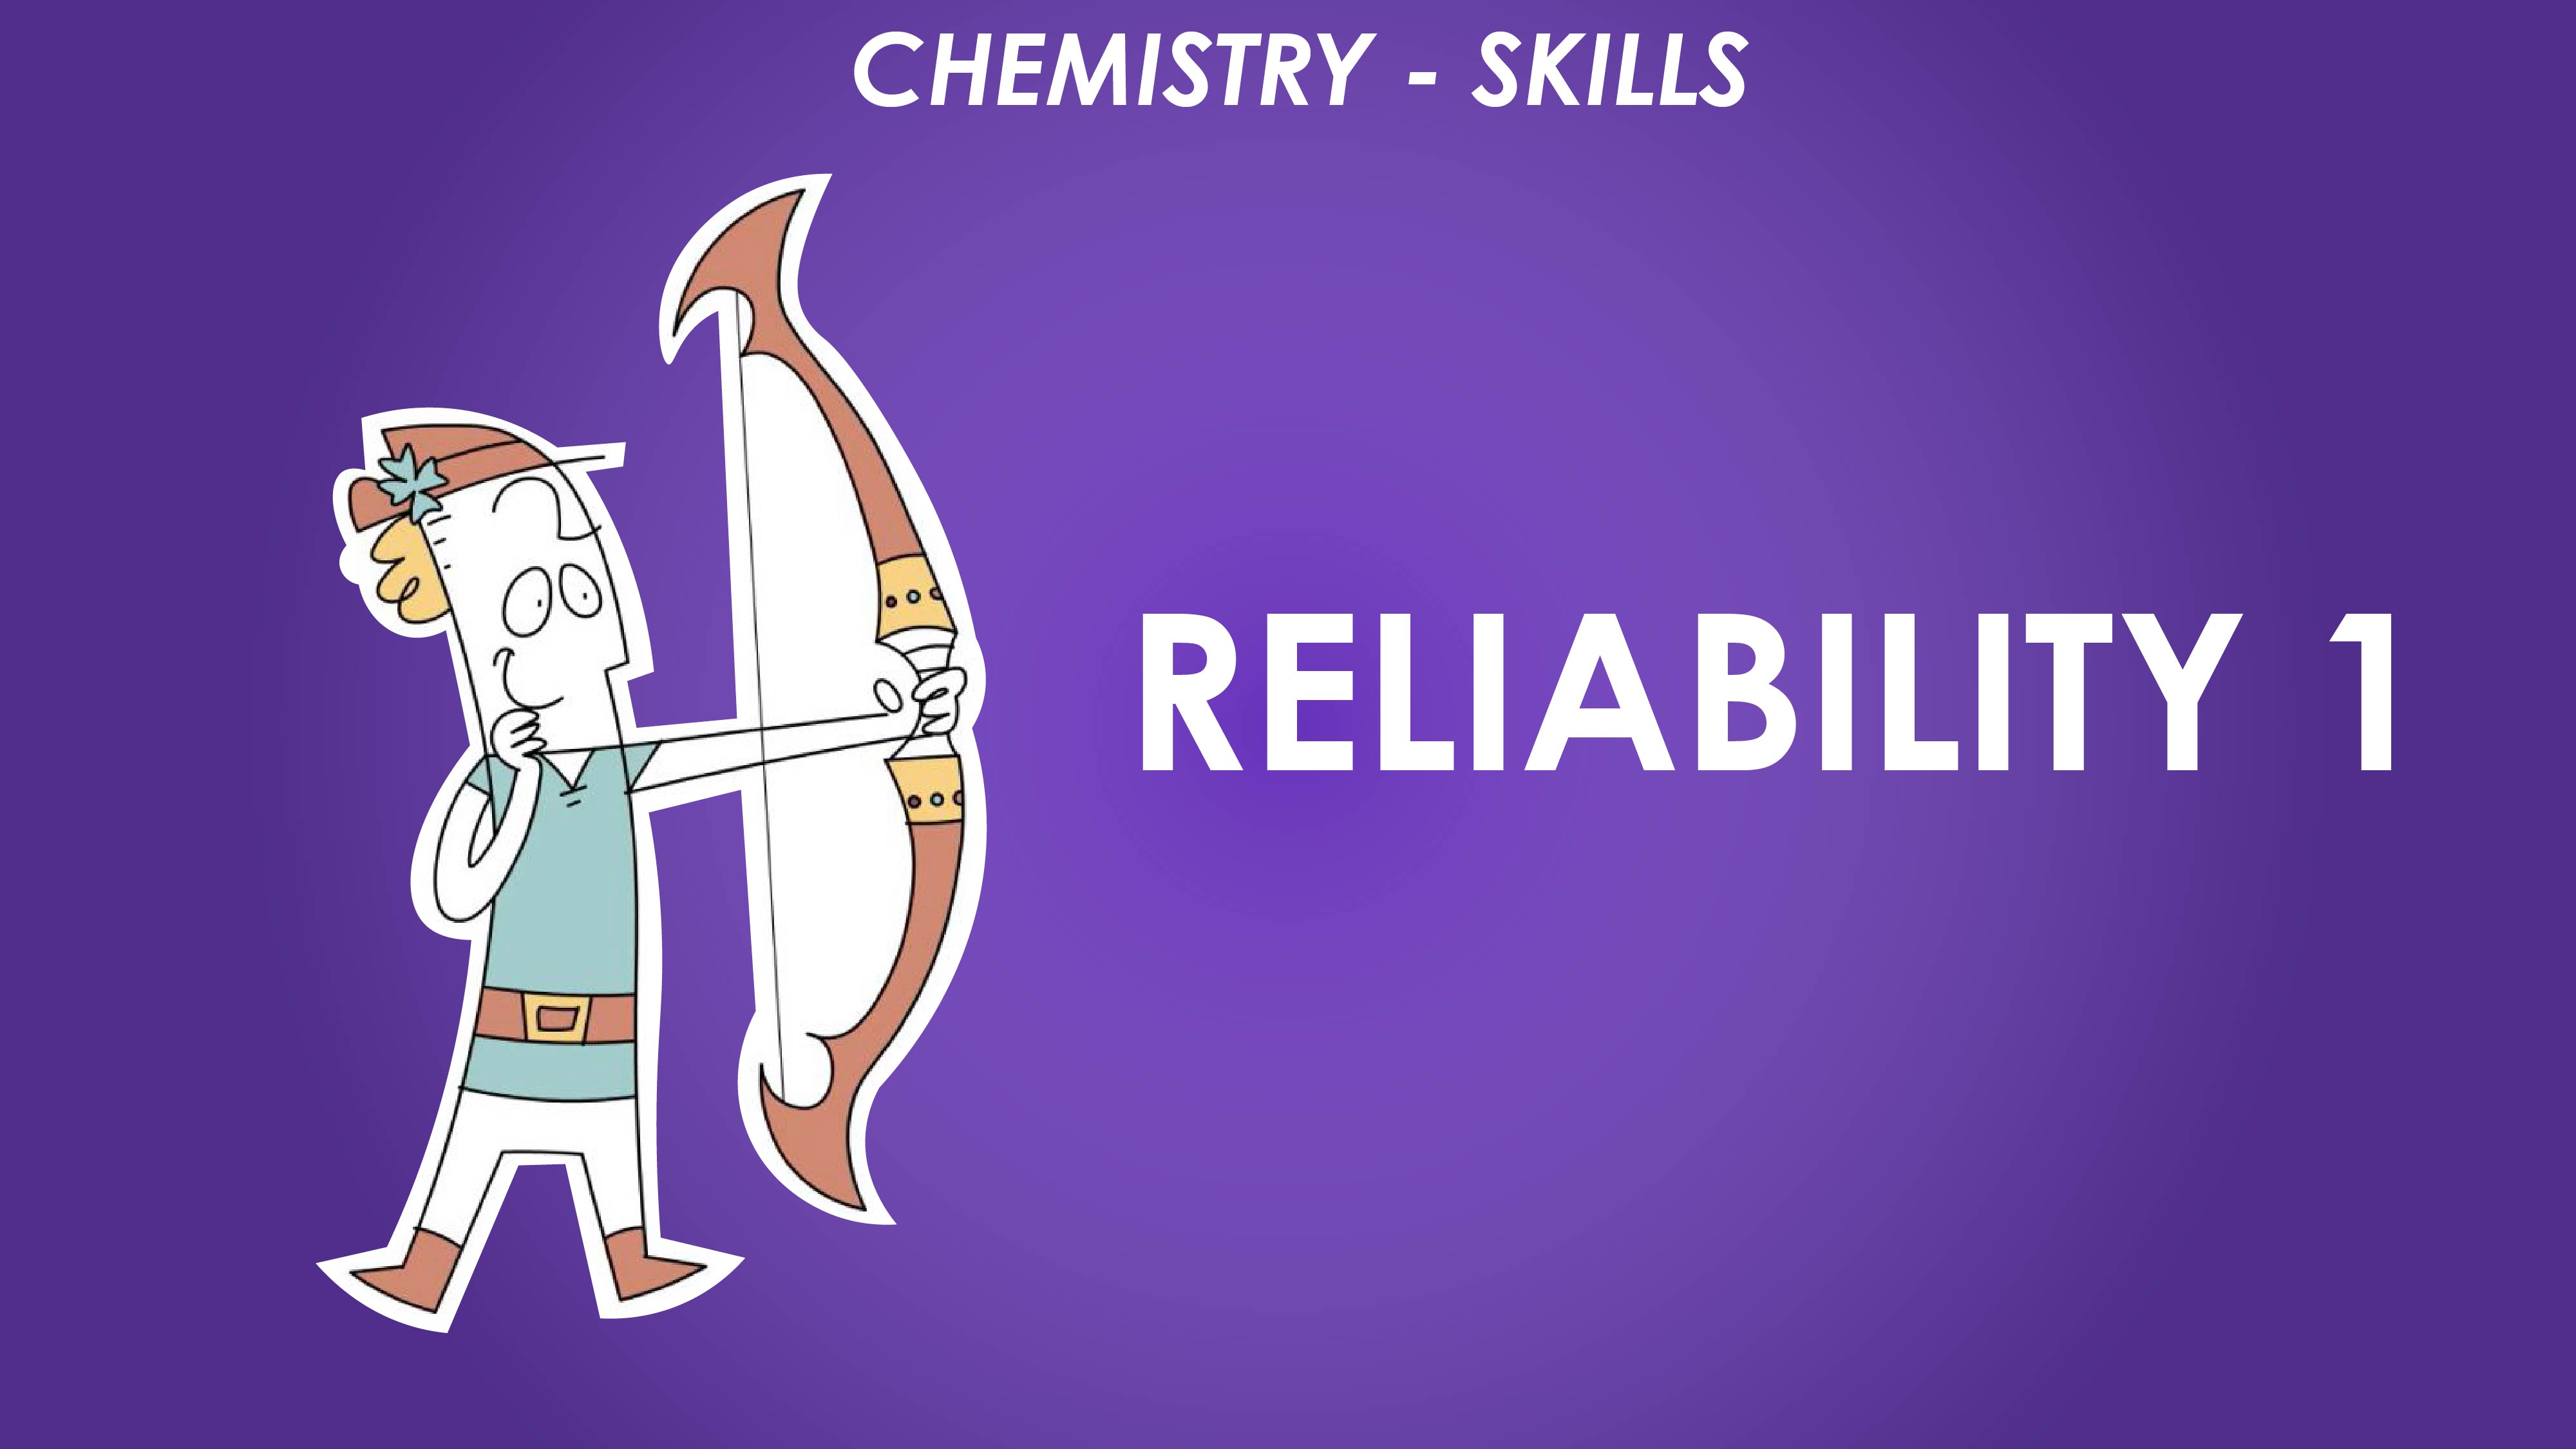 Reliability 1 - Chemistry Skills